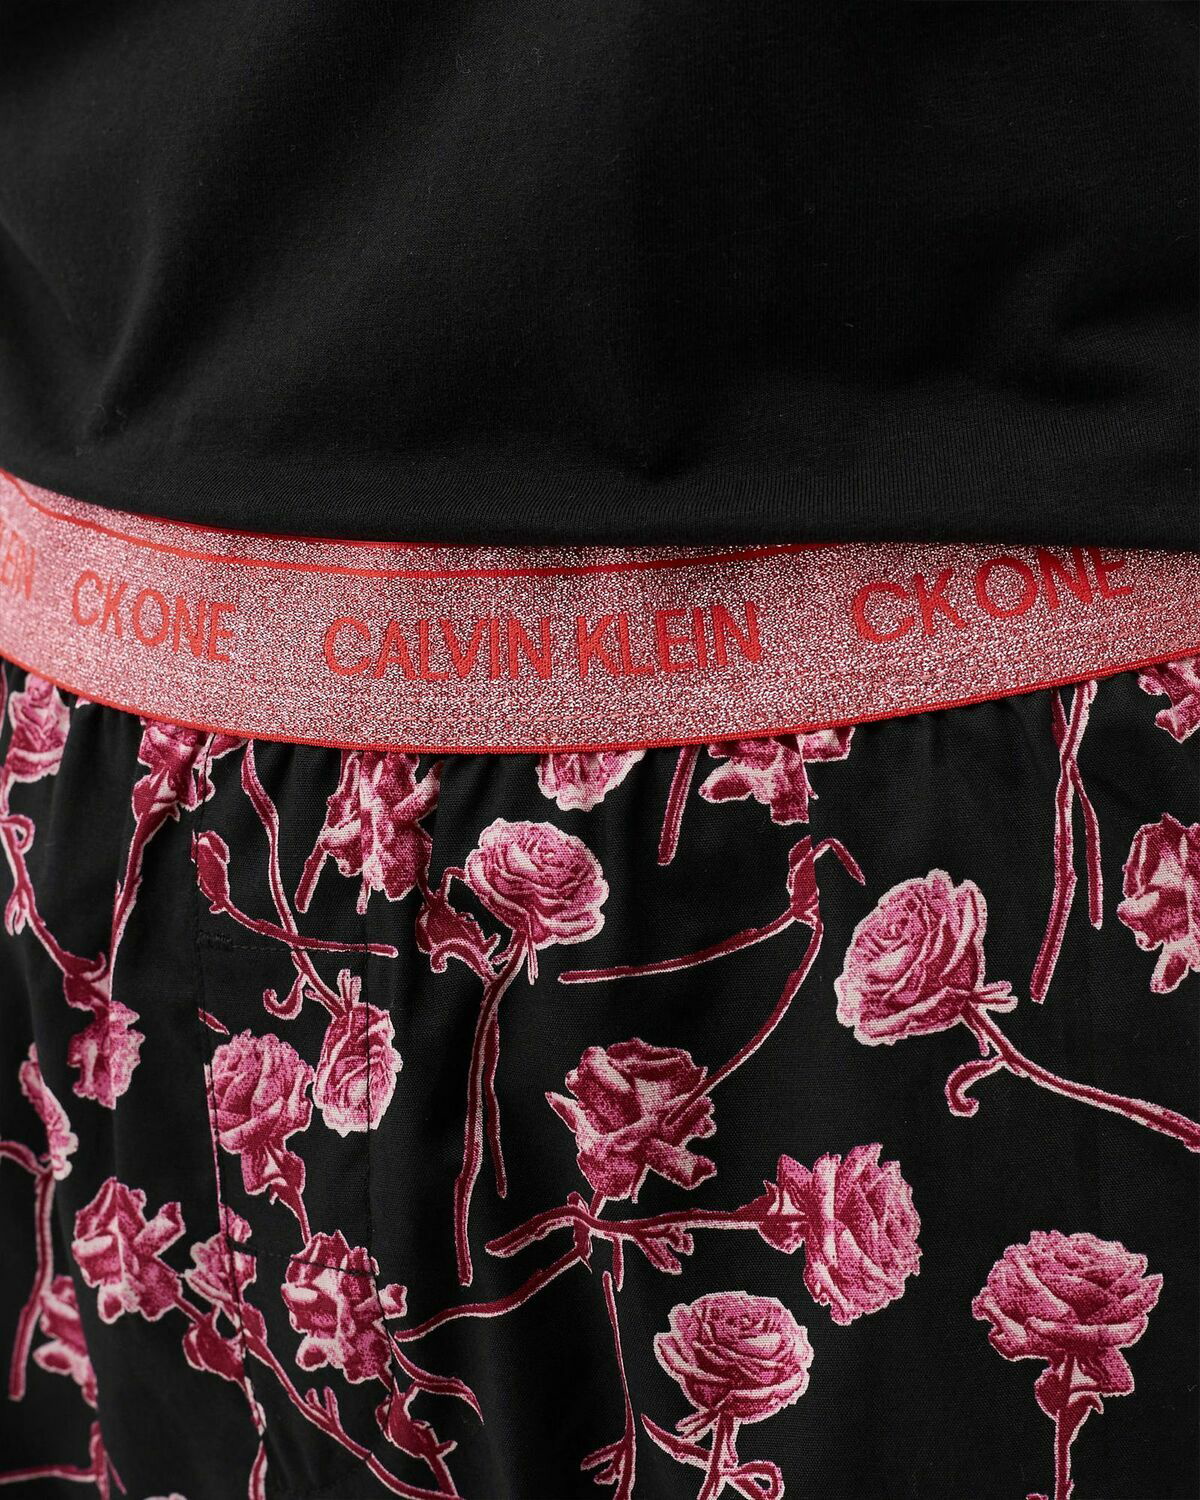 Calvin Klein Underwear S/S Short Set Black - Womens - Sleep